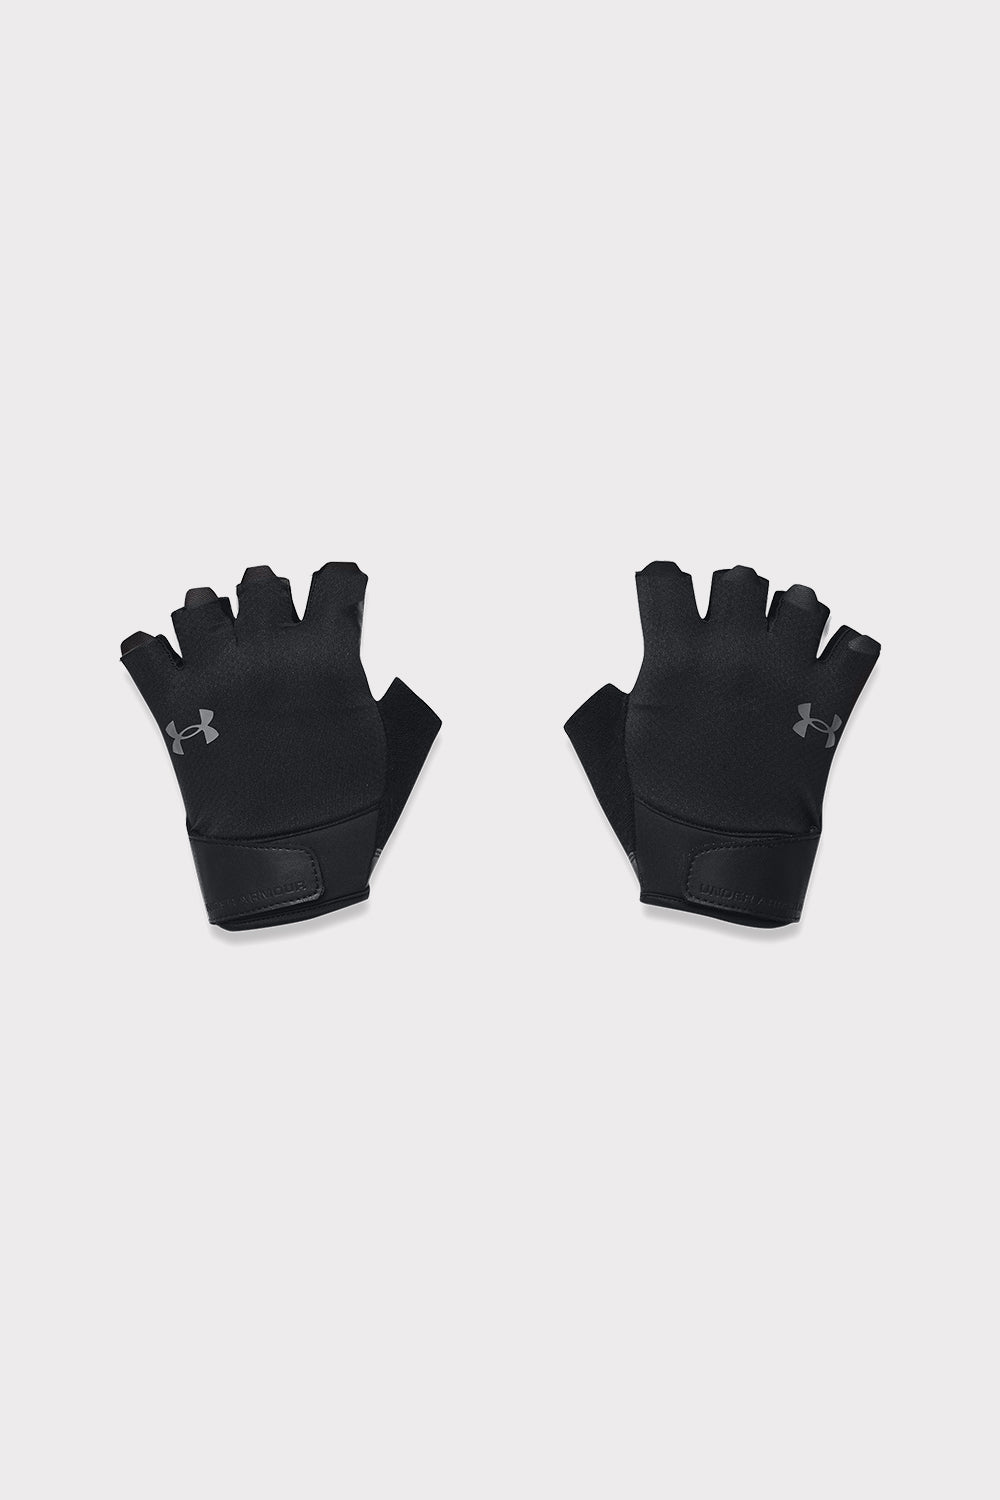 UA M's Training Gloves - černé 